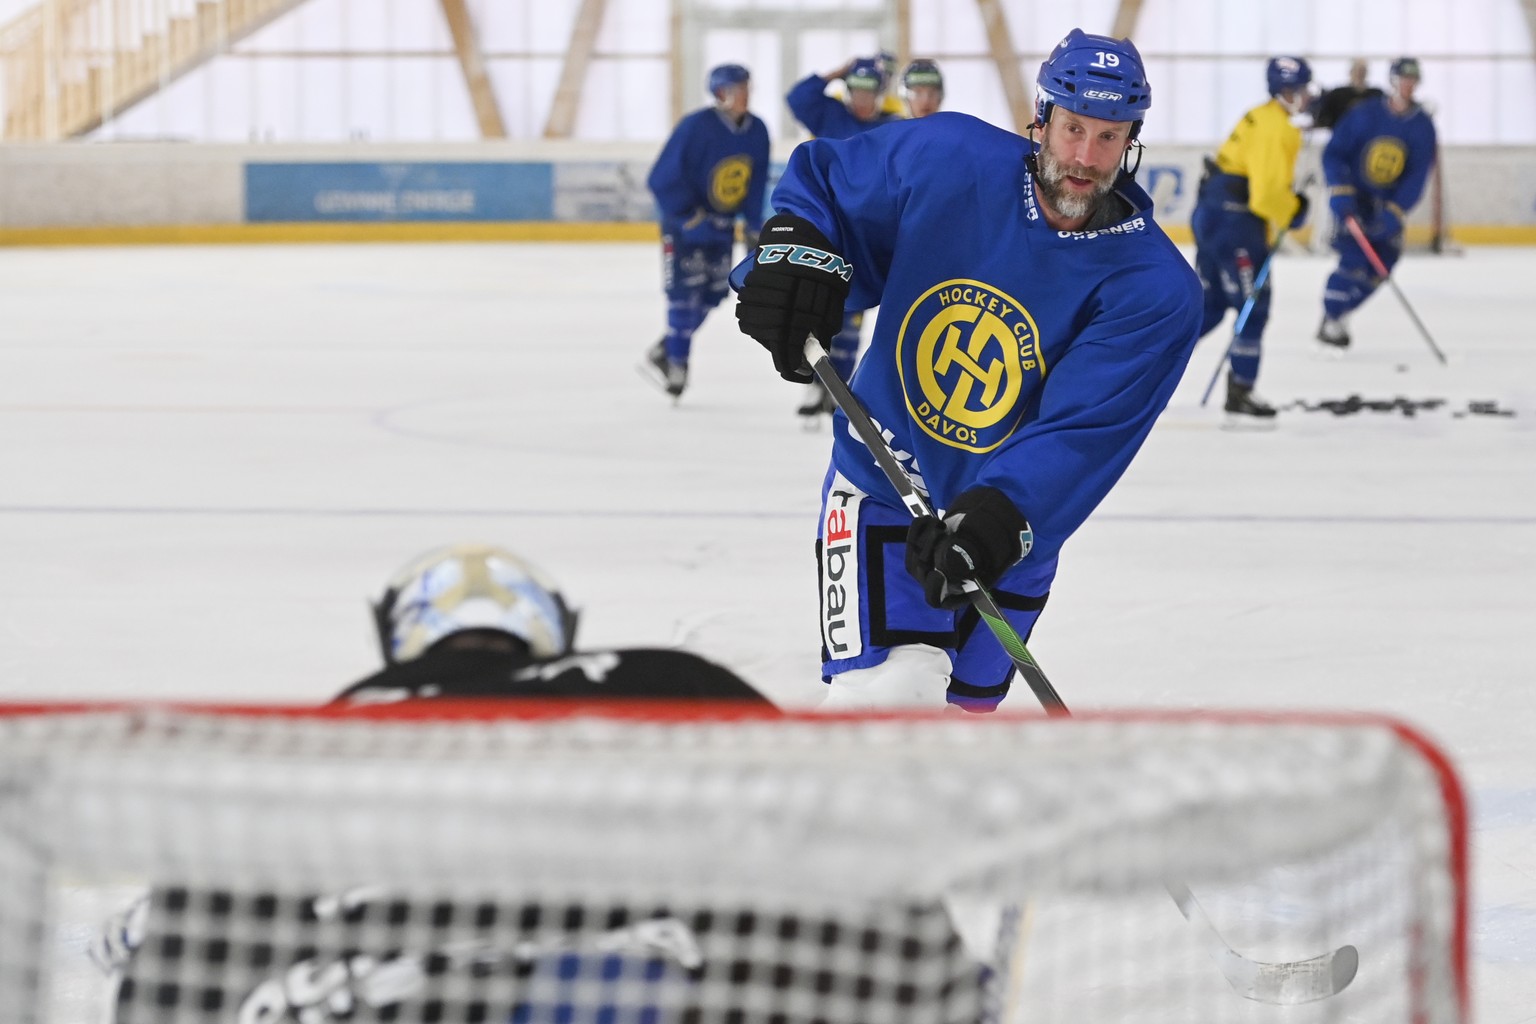 Joe Thornton, ehemaliger Spieler des HC Davos und NHL-Spieler, aufgenommen im Training, am Mittwoch, 5. August 2020, in der Trainingshalle in Davos. (KEYSTONE/Gian Ehrenzeller)